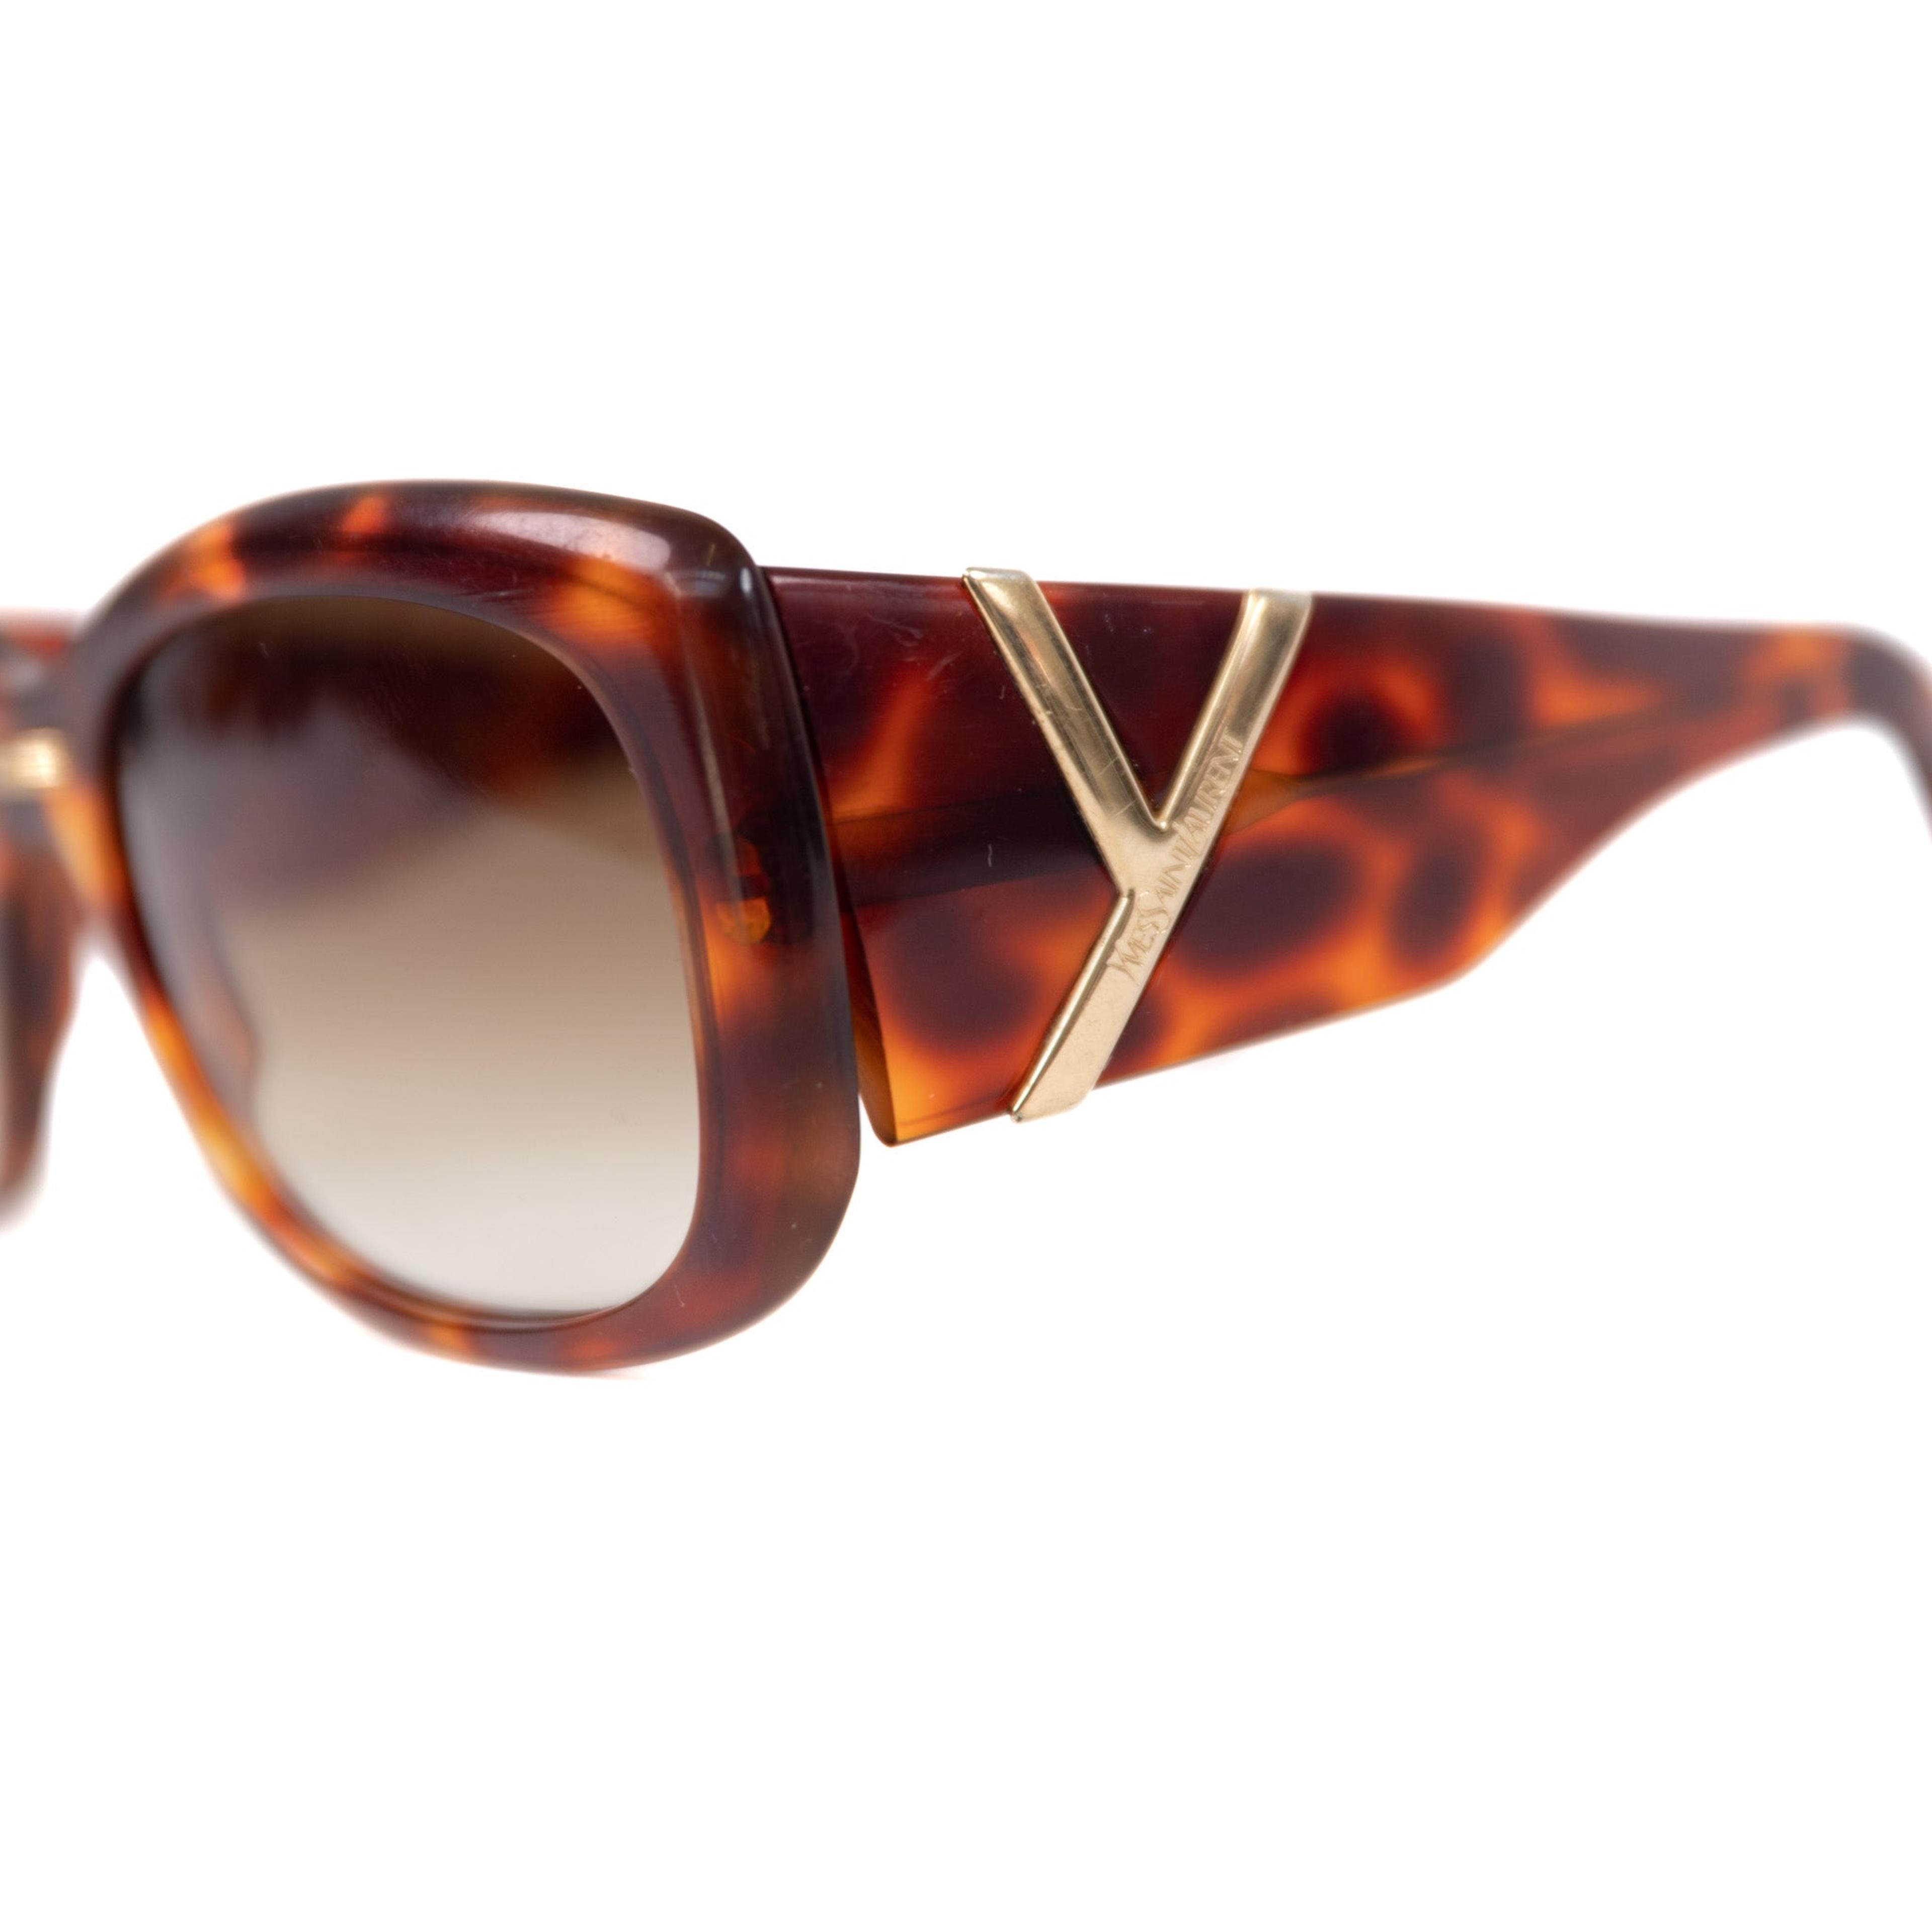 Alternate View 2 of Yves Saint Laurent Tortoise Sunglasses